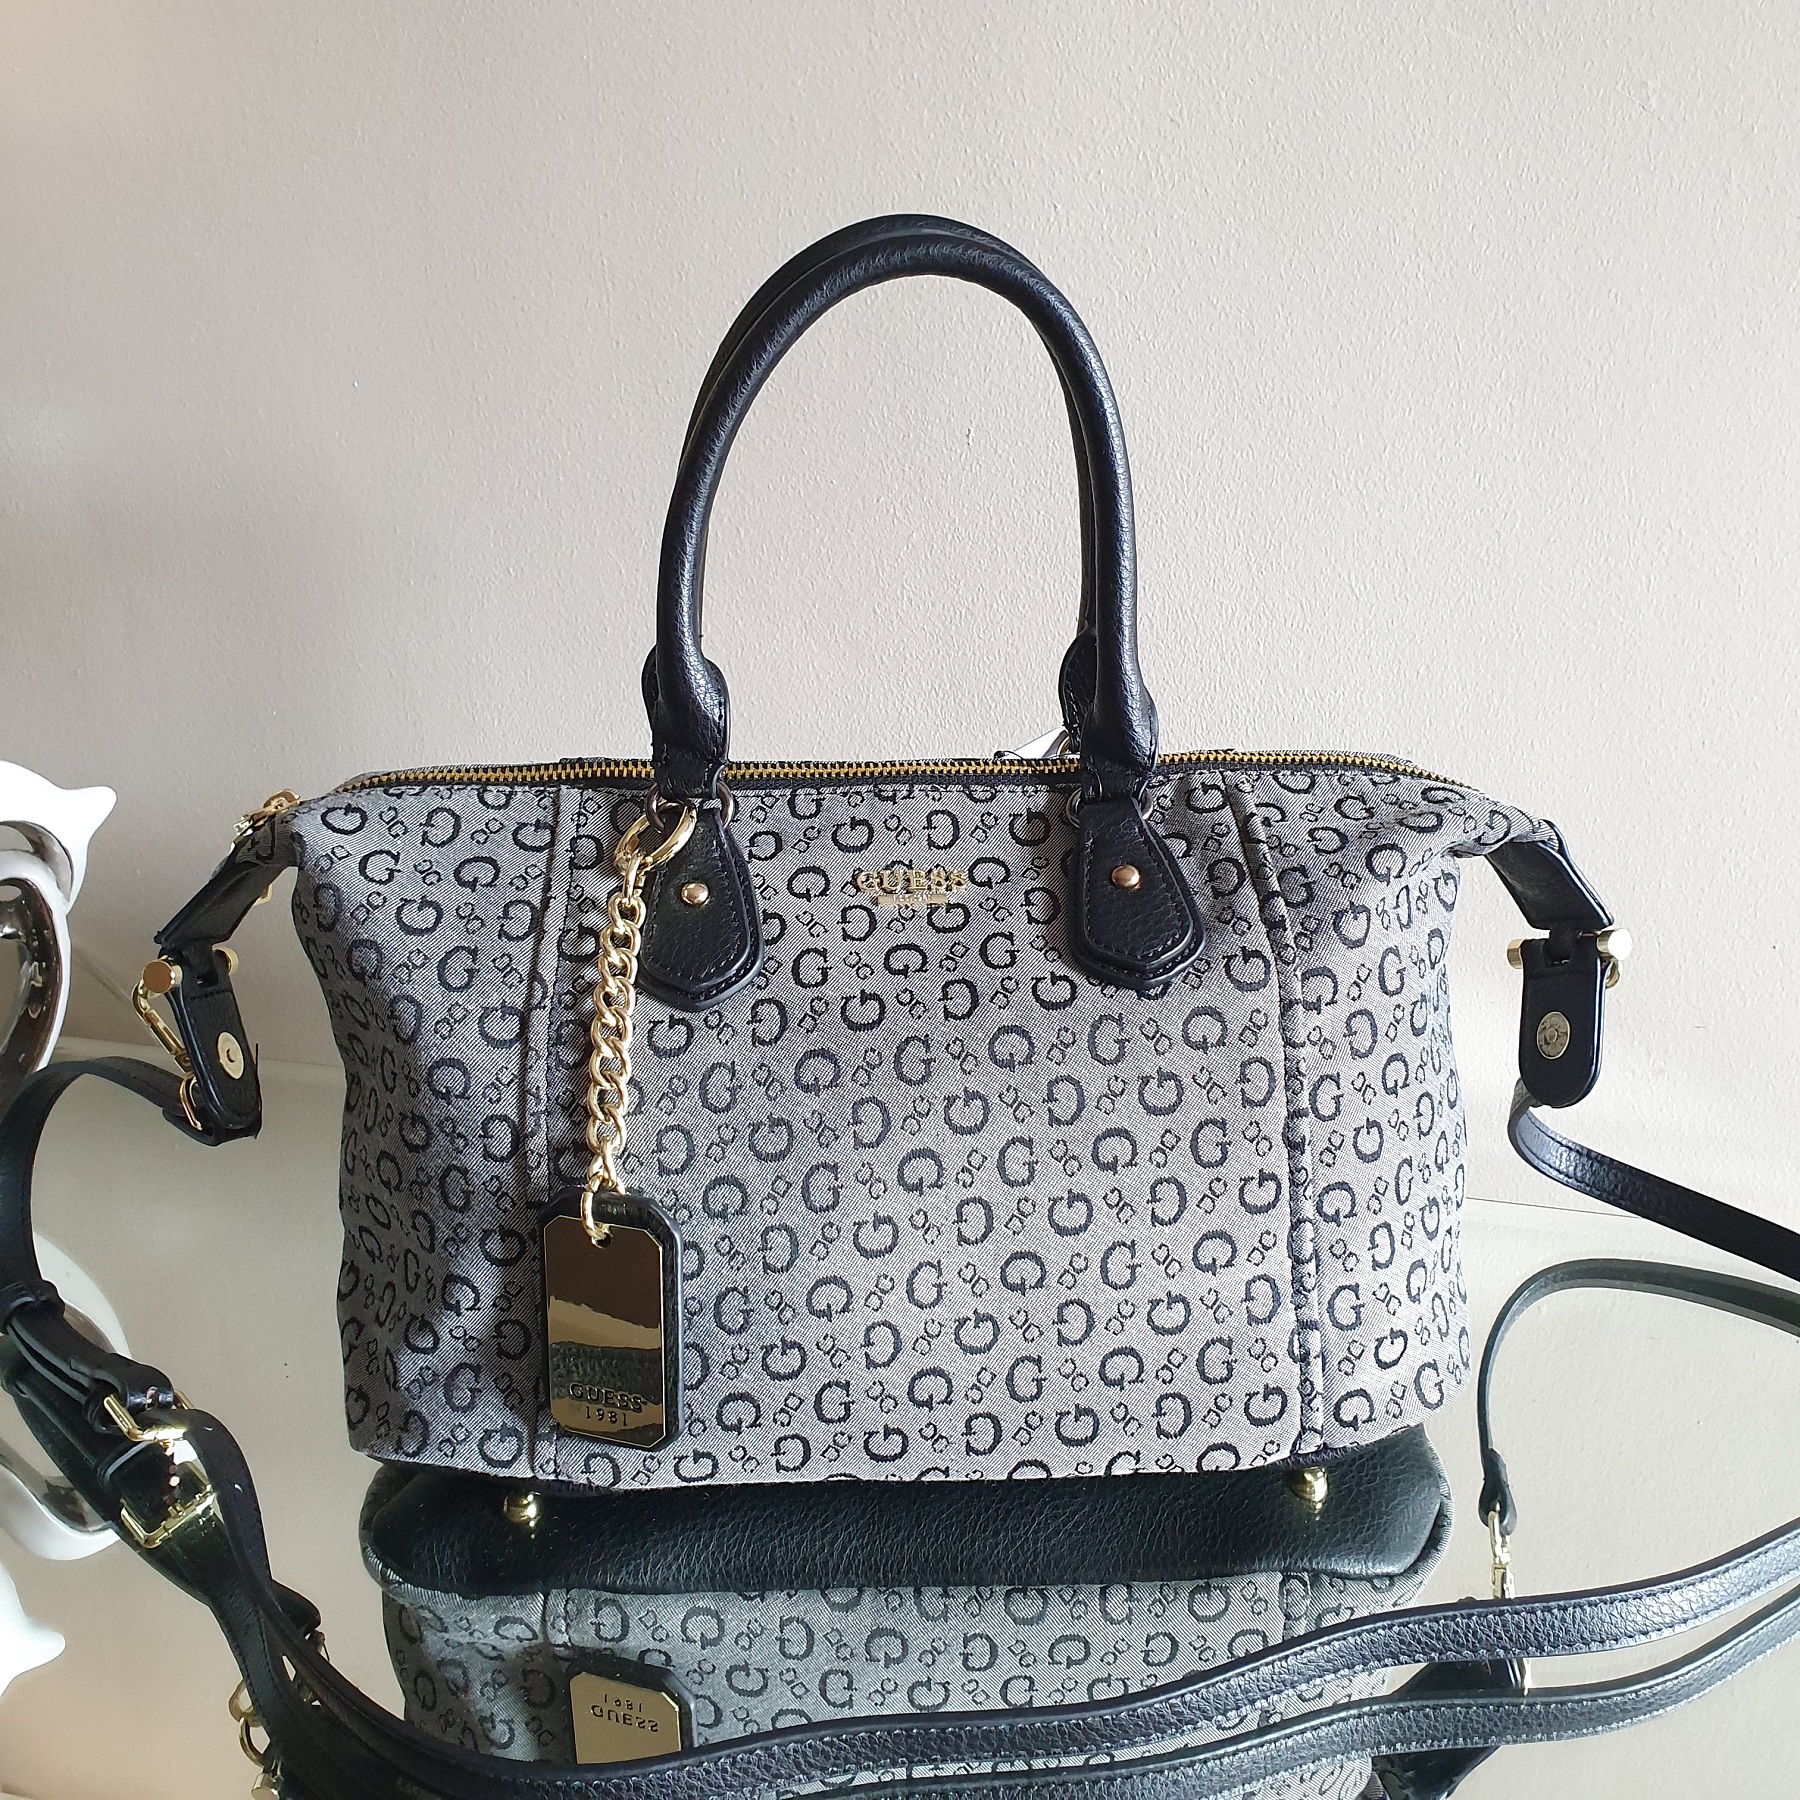 Guess Handbags On Sale Canada | semashow.com